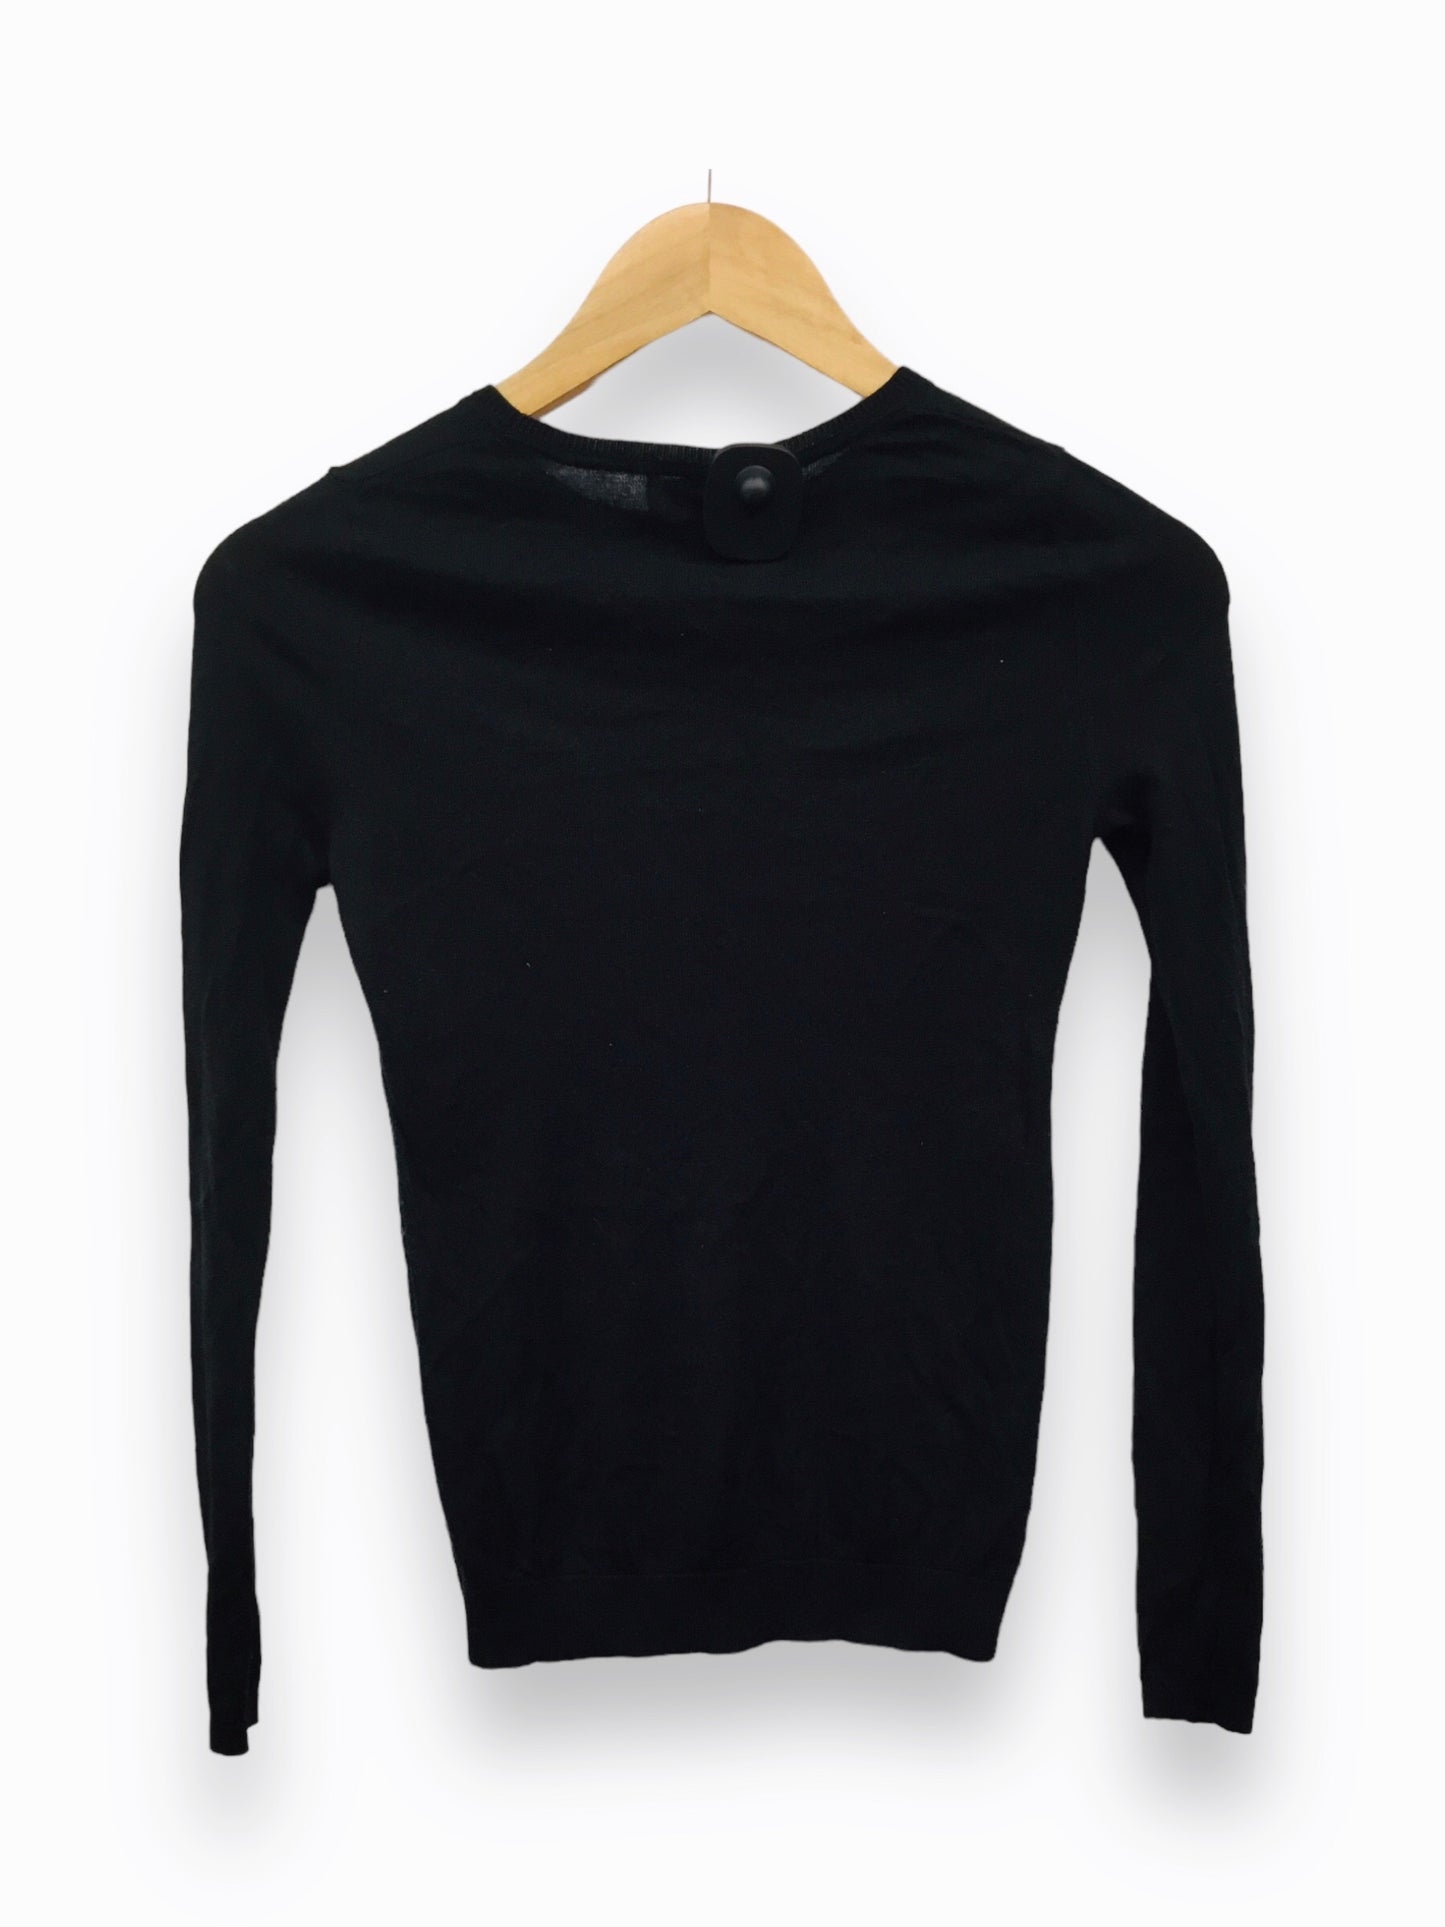 Sweater By Barneys Ny  Size: Xs